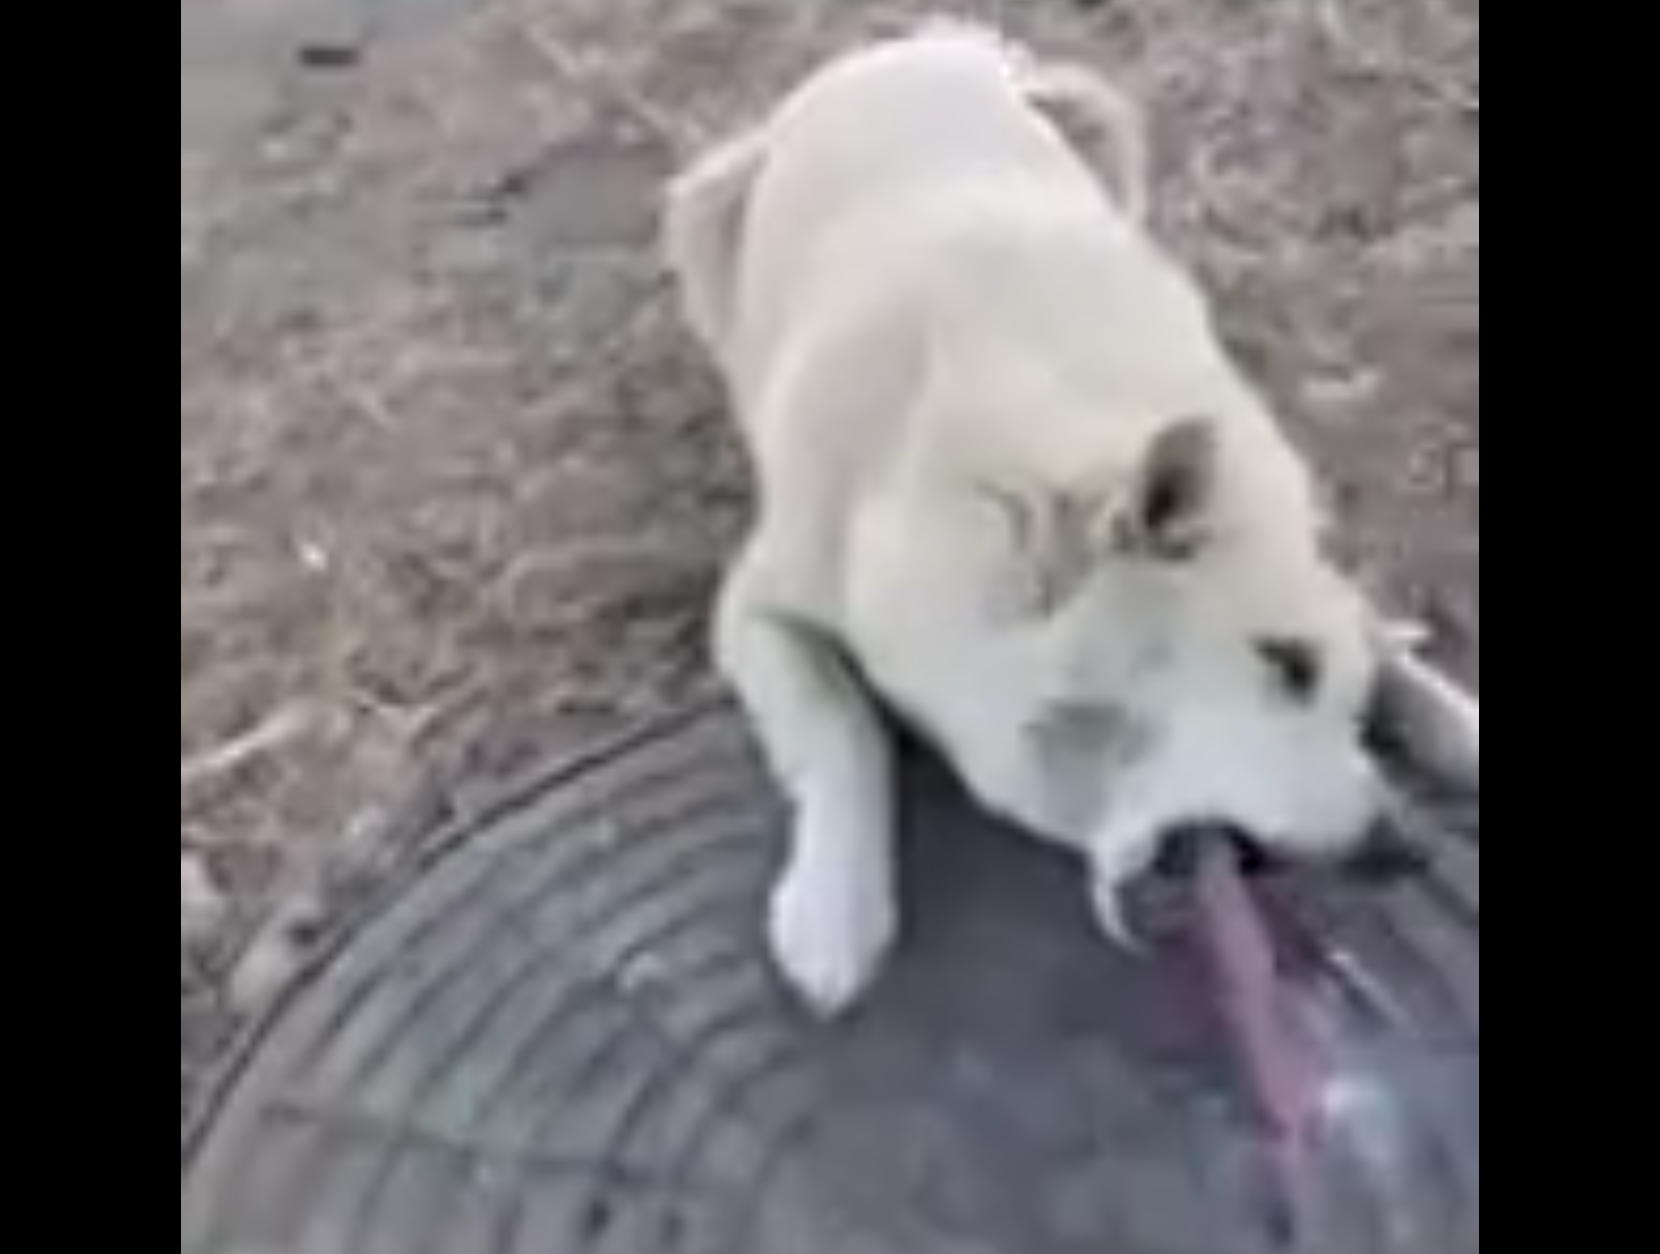 Il cane è attaccato con la lingua al ghiaccio: il salvataggio è emozionante [VIDEO]